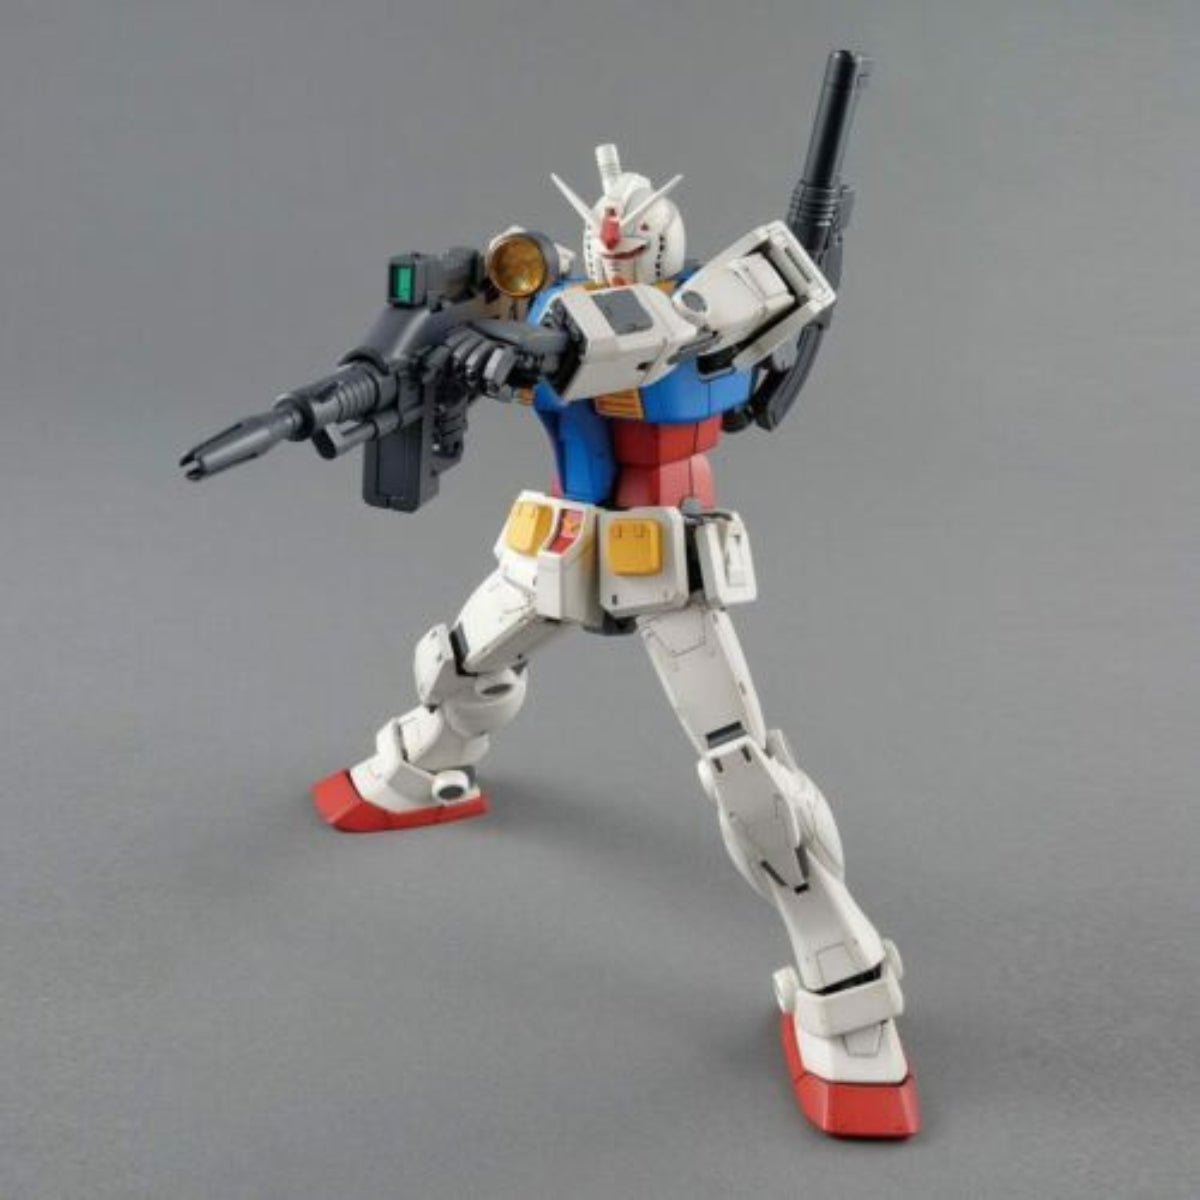 RX-78-2 Gundam - pose by akakyuuketsuki on DeviantArt